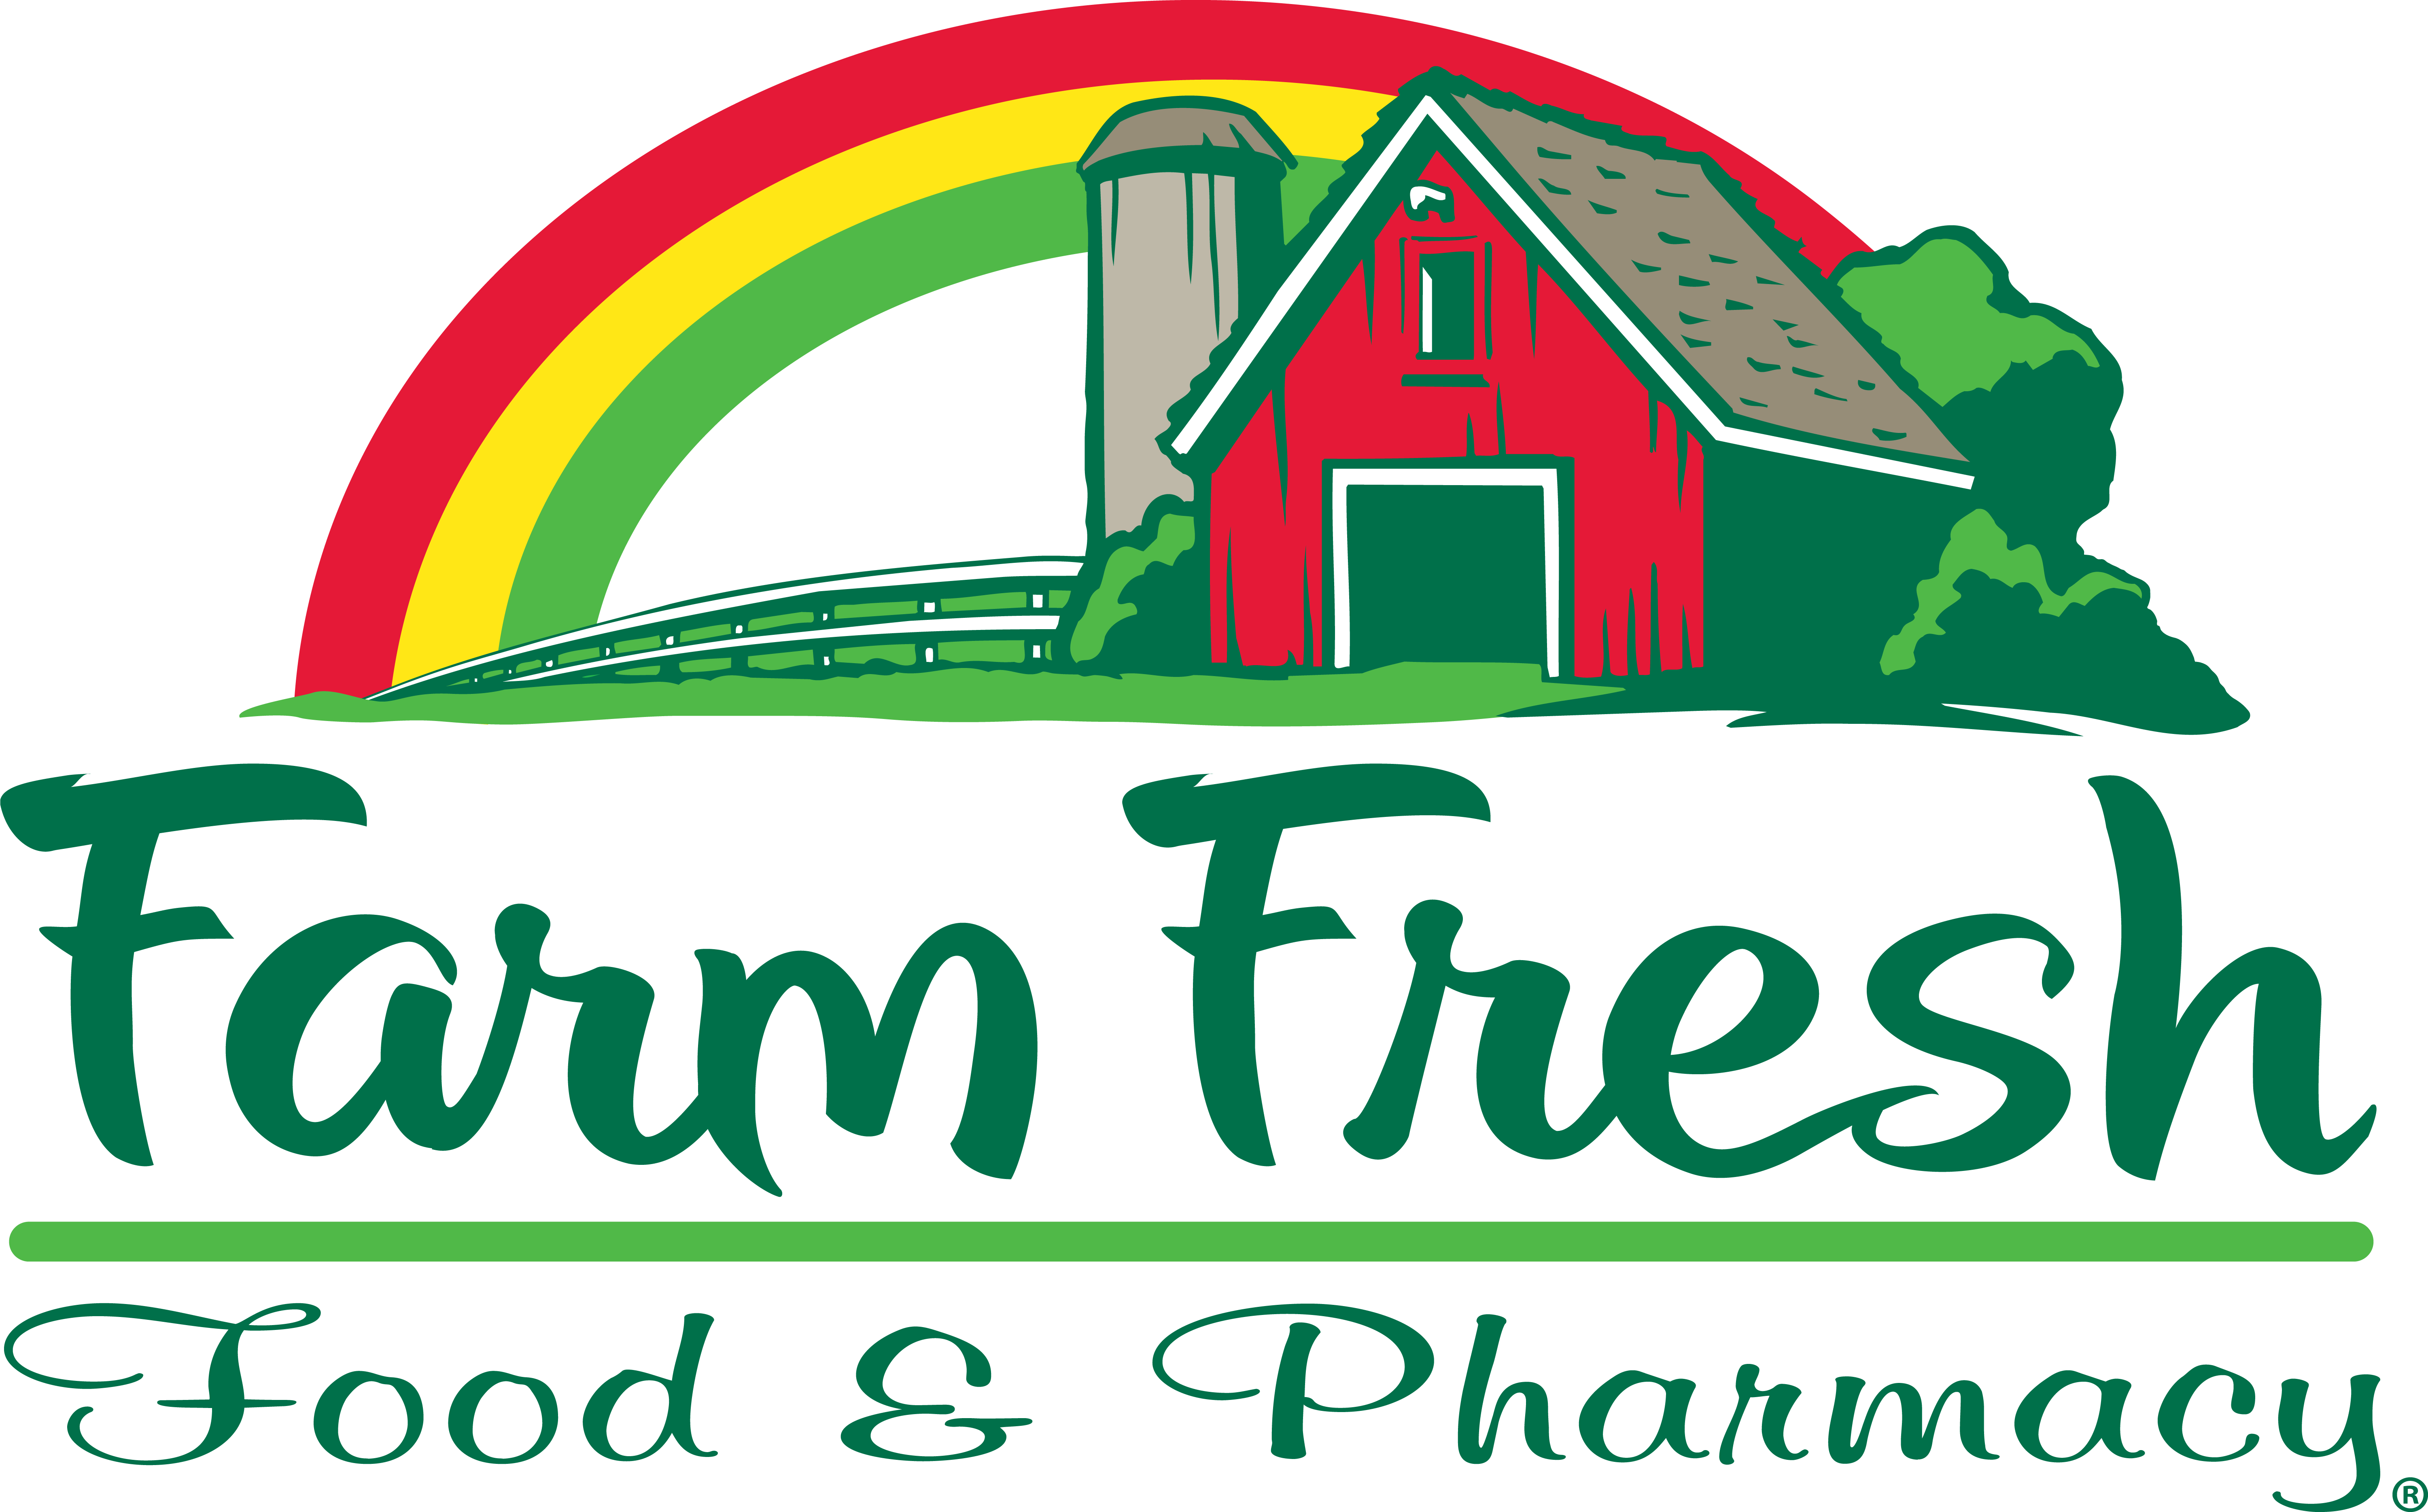 Christmas Tree Farm In Texas - Farm Fresh Food & Pharmacy (6000x3737)